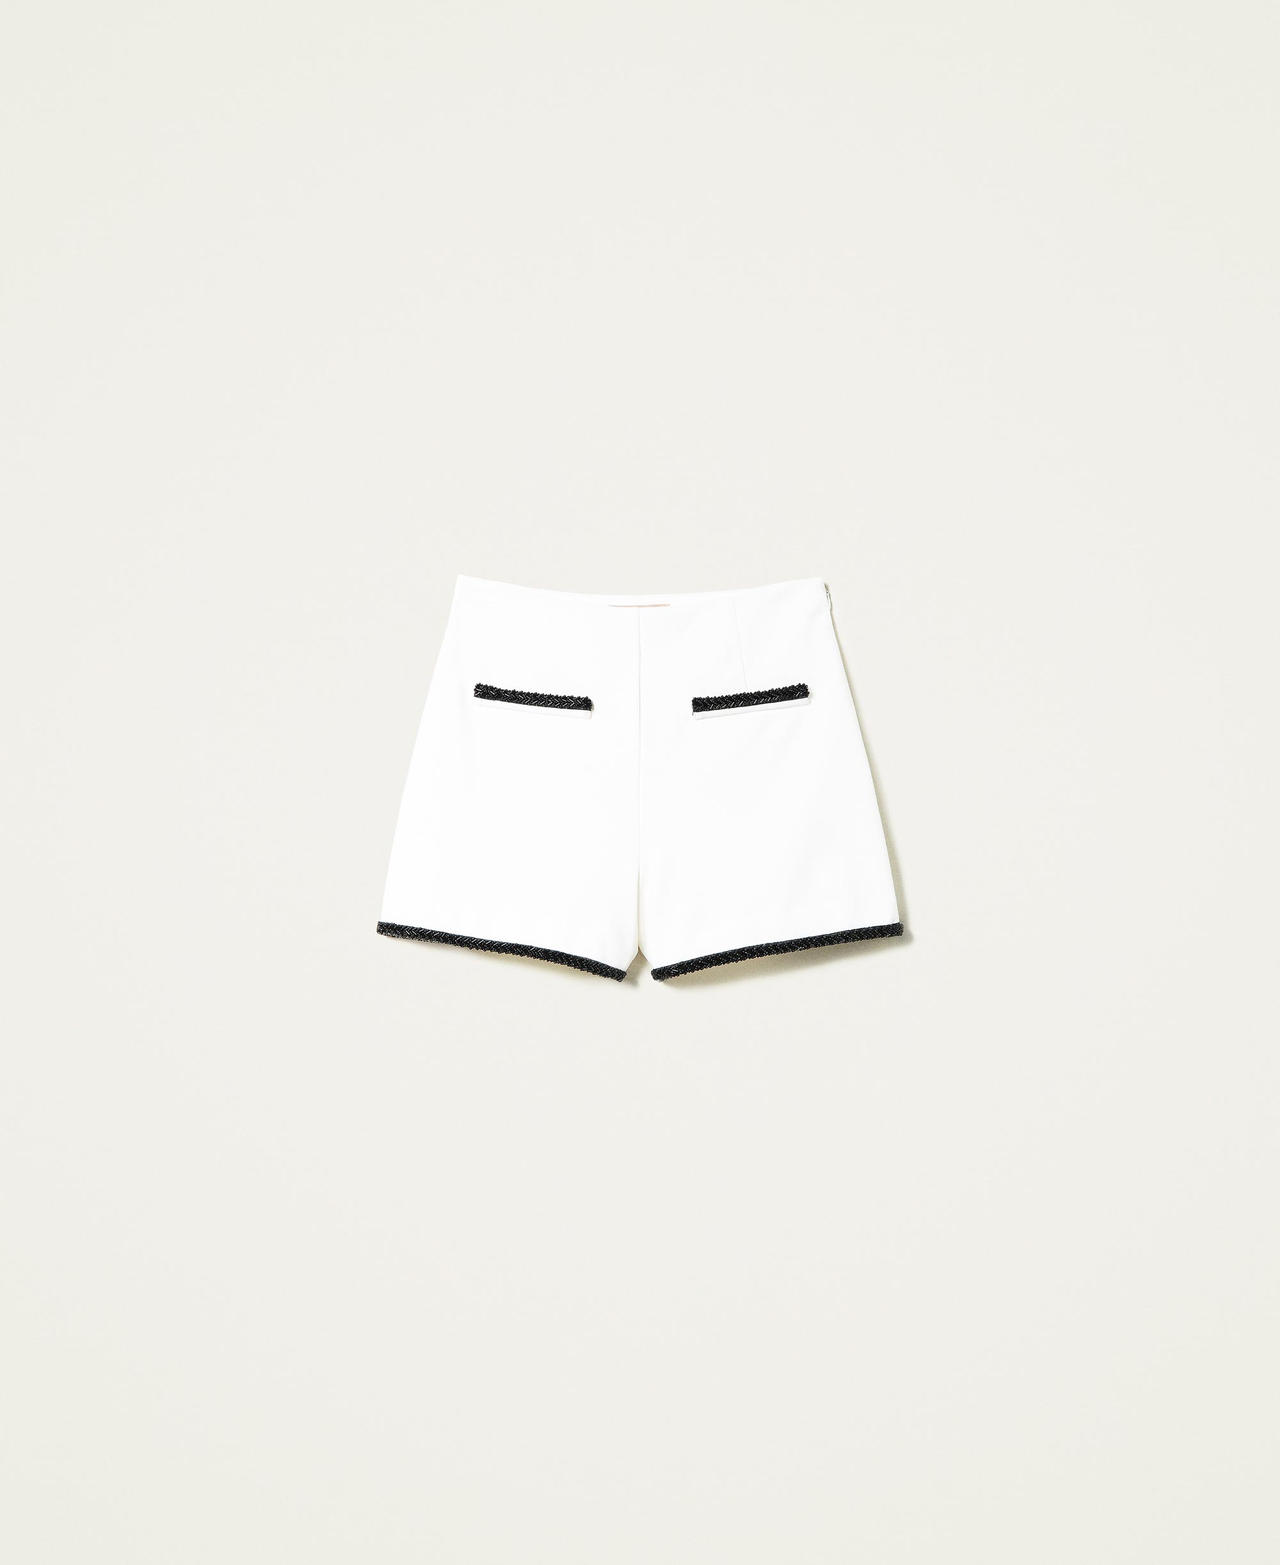 Pantalones cortos de talle alto con bordado a mano Bicolor Blanco "Nieve" / Negro Mujer 222TP2036-0S